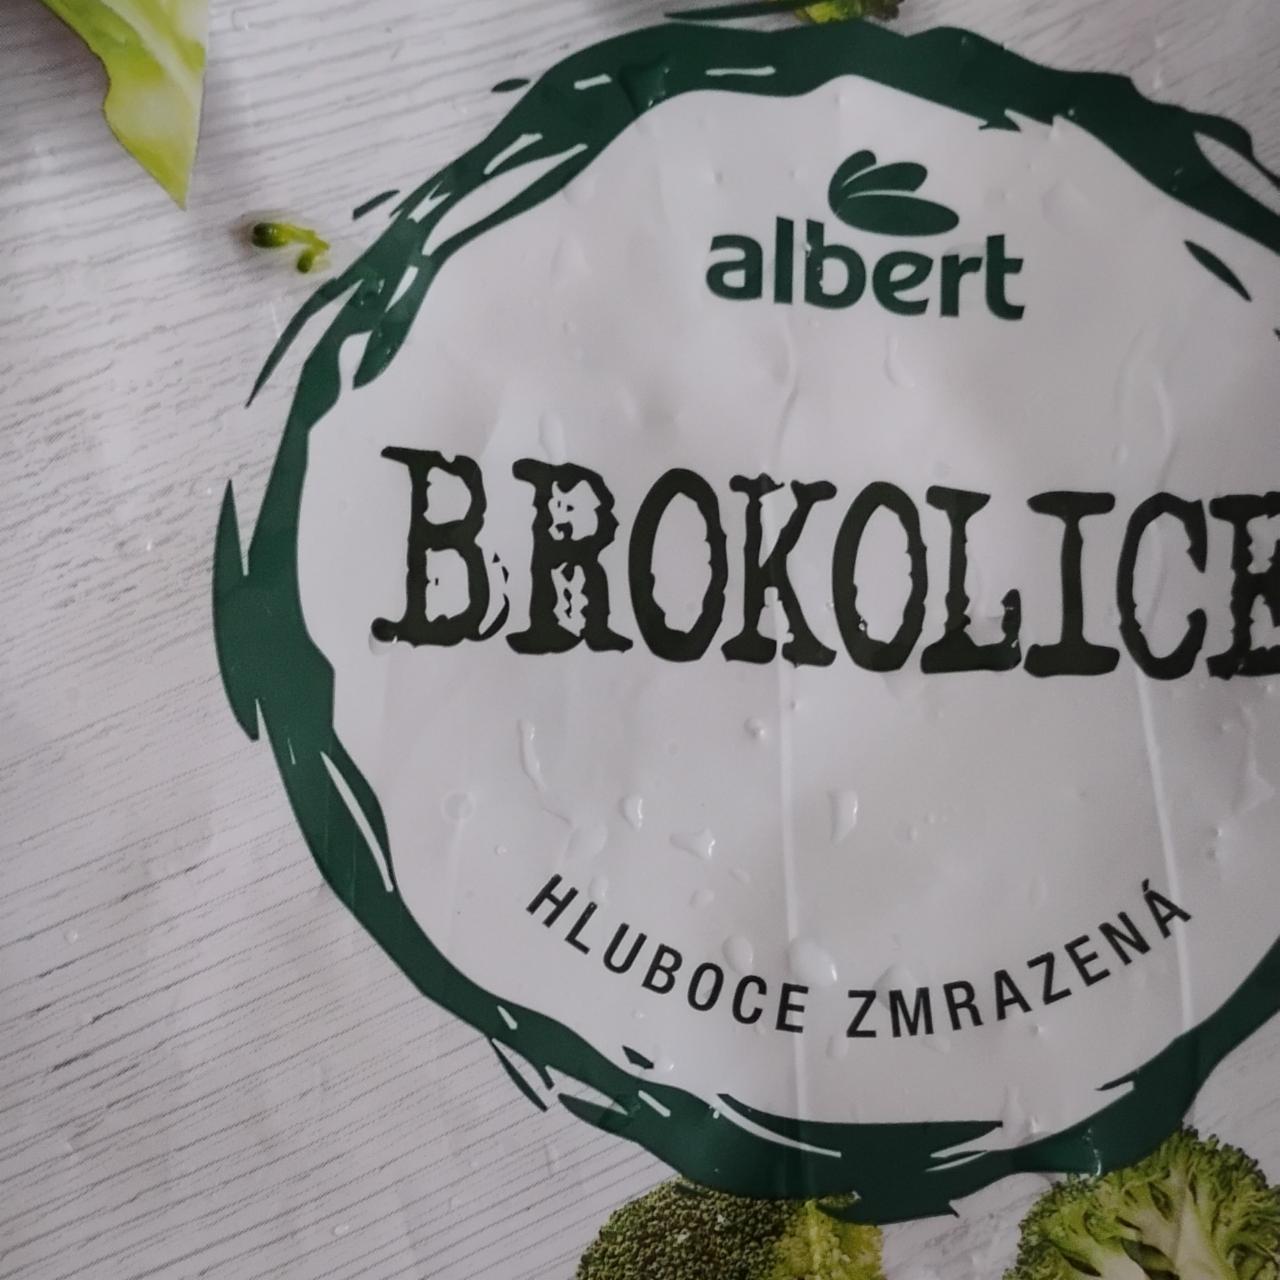 Fotografie - Brokolice hluboce zmrazená Albert